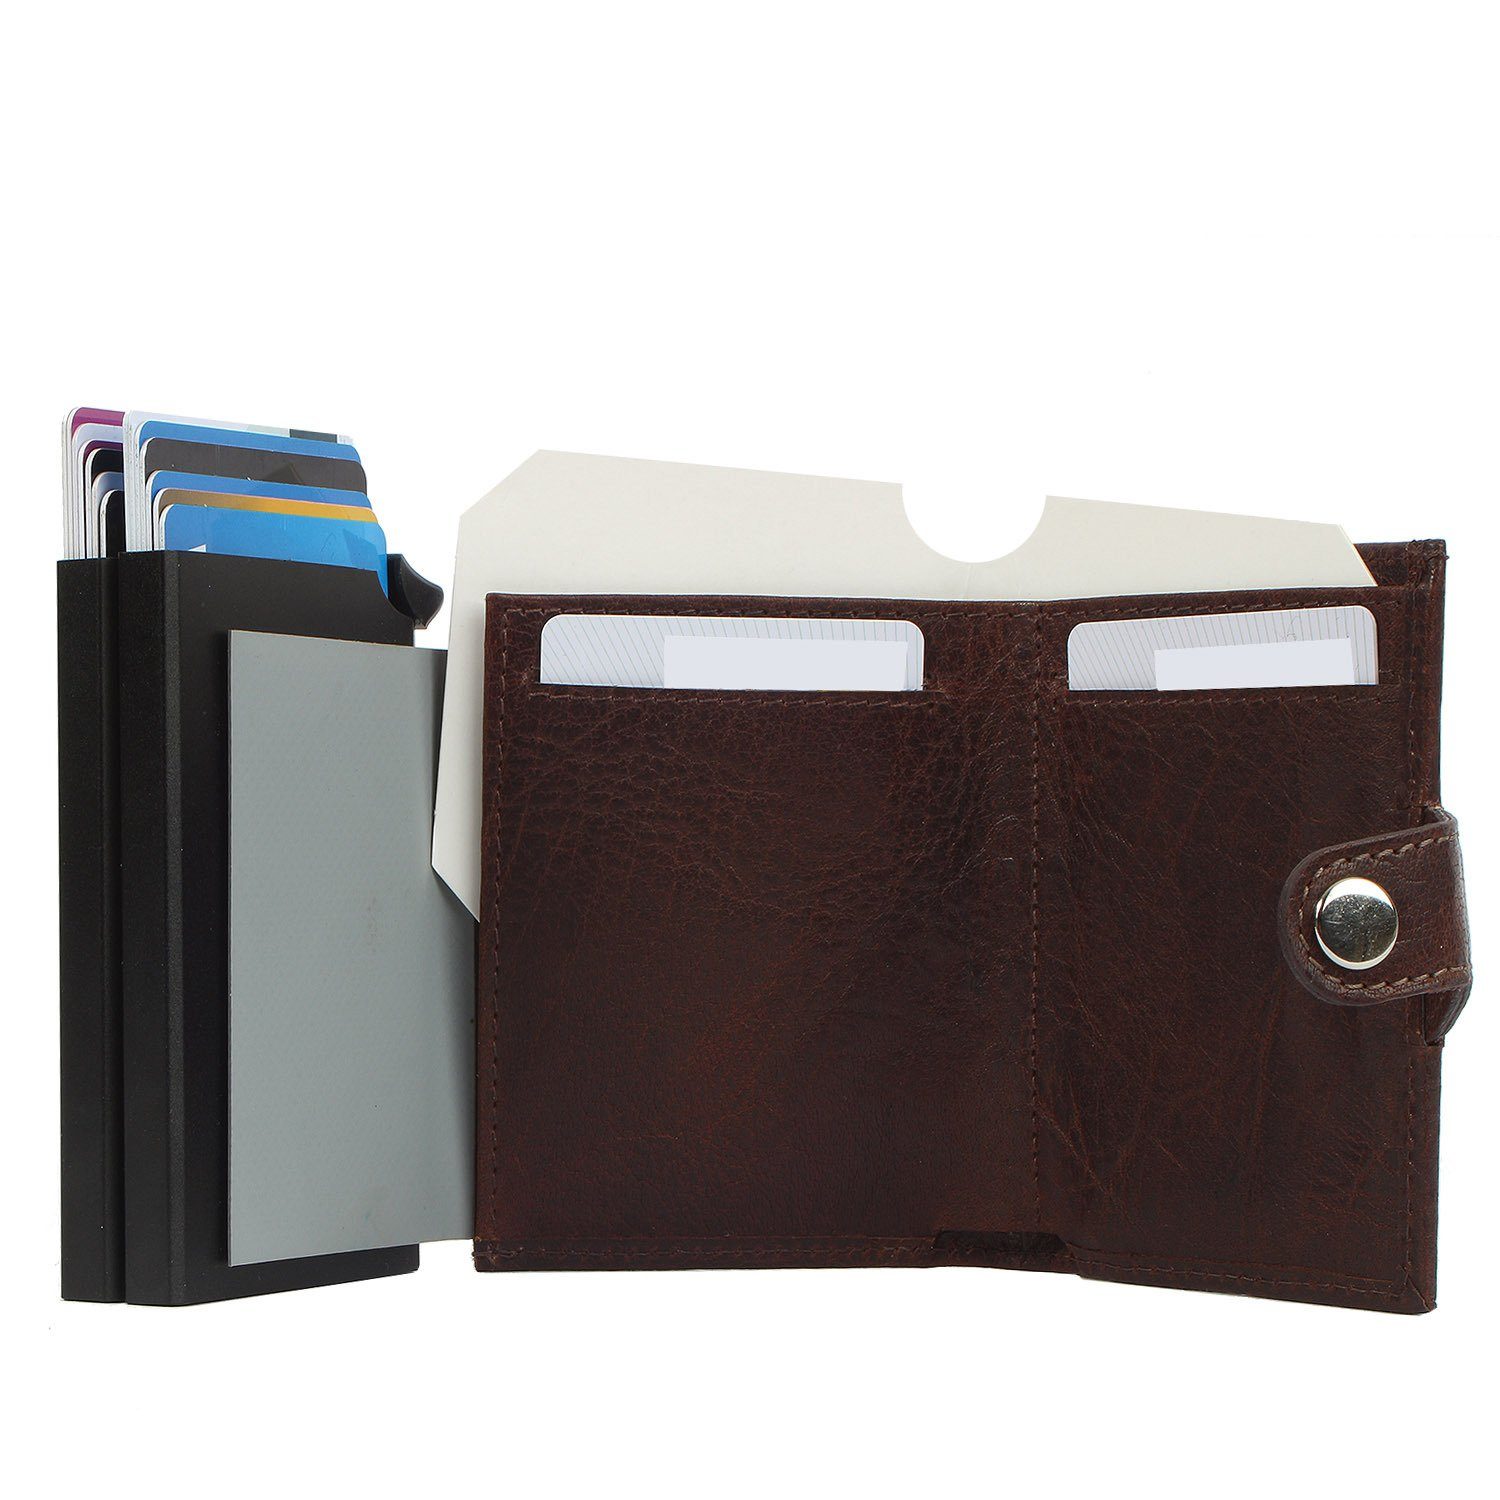 Margelisch Mini Geldbörse leather, Leder RFID noonyu Kreditkartenbörse double brown aus Upcycling